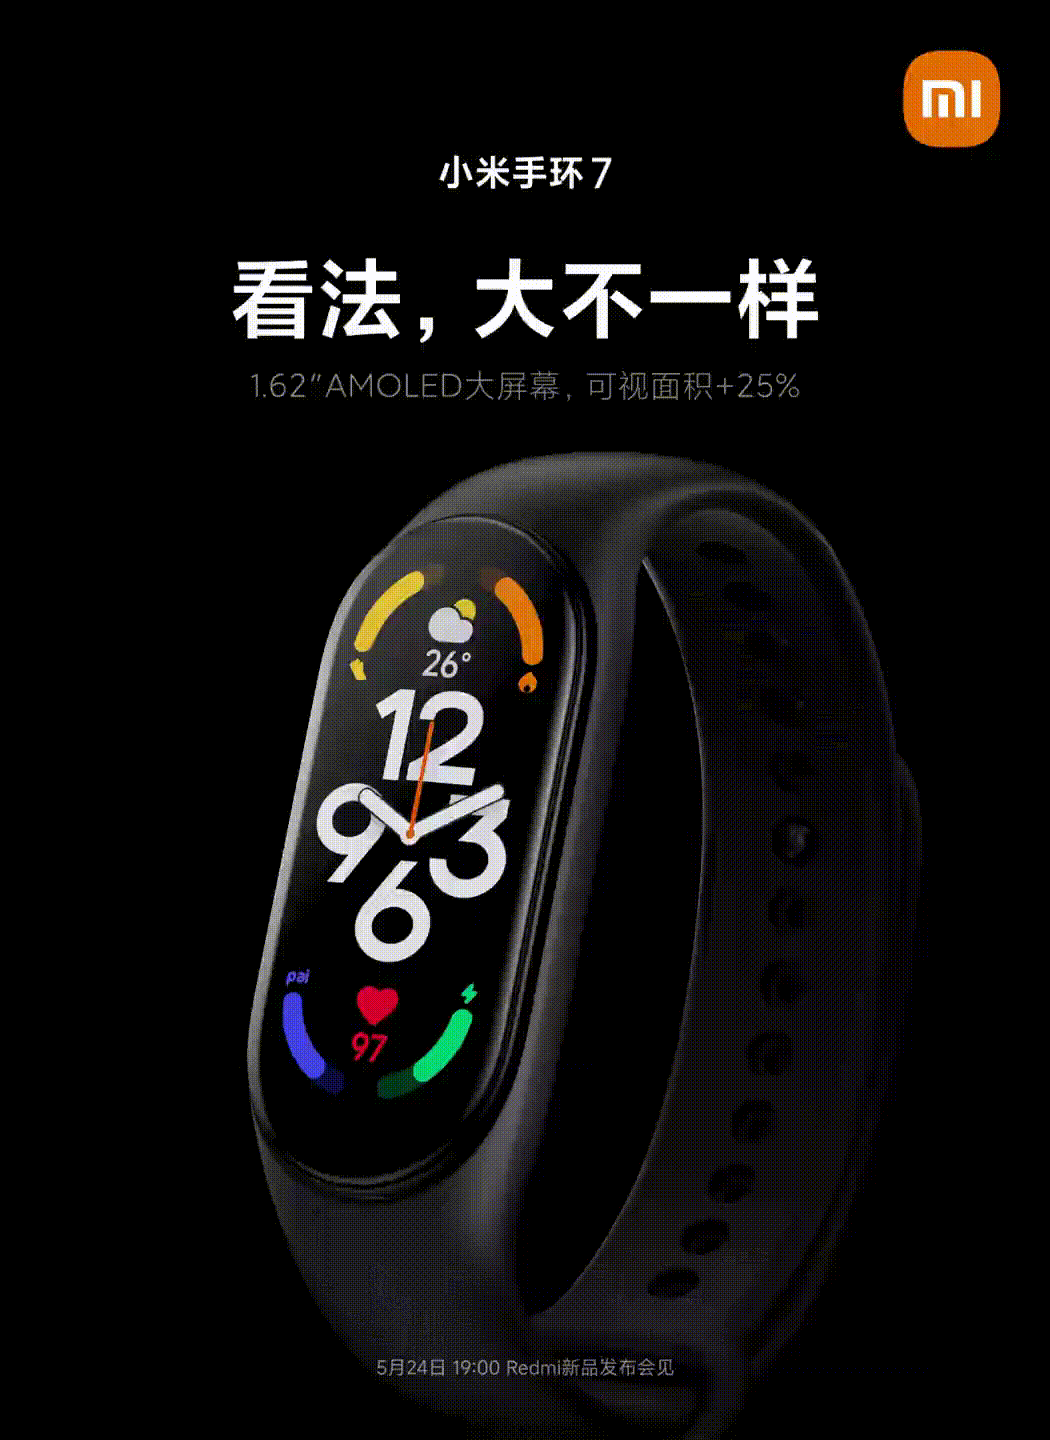 Xiaomi опубликовала первое рекламное видео новенького фитнес-браслета Mi Band 7